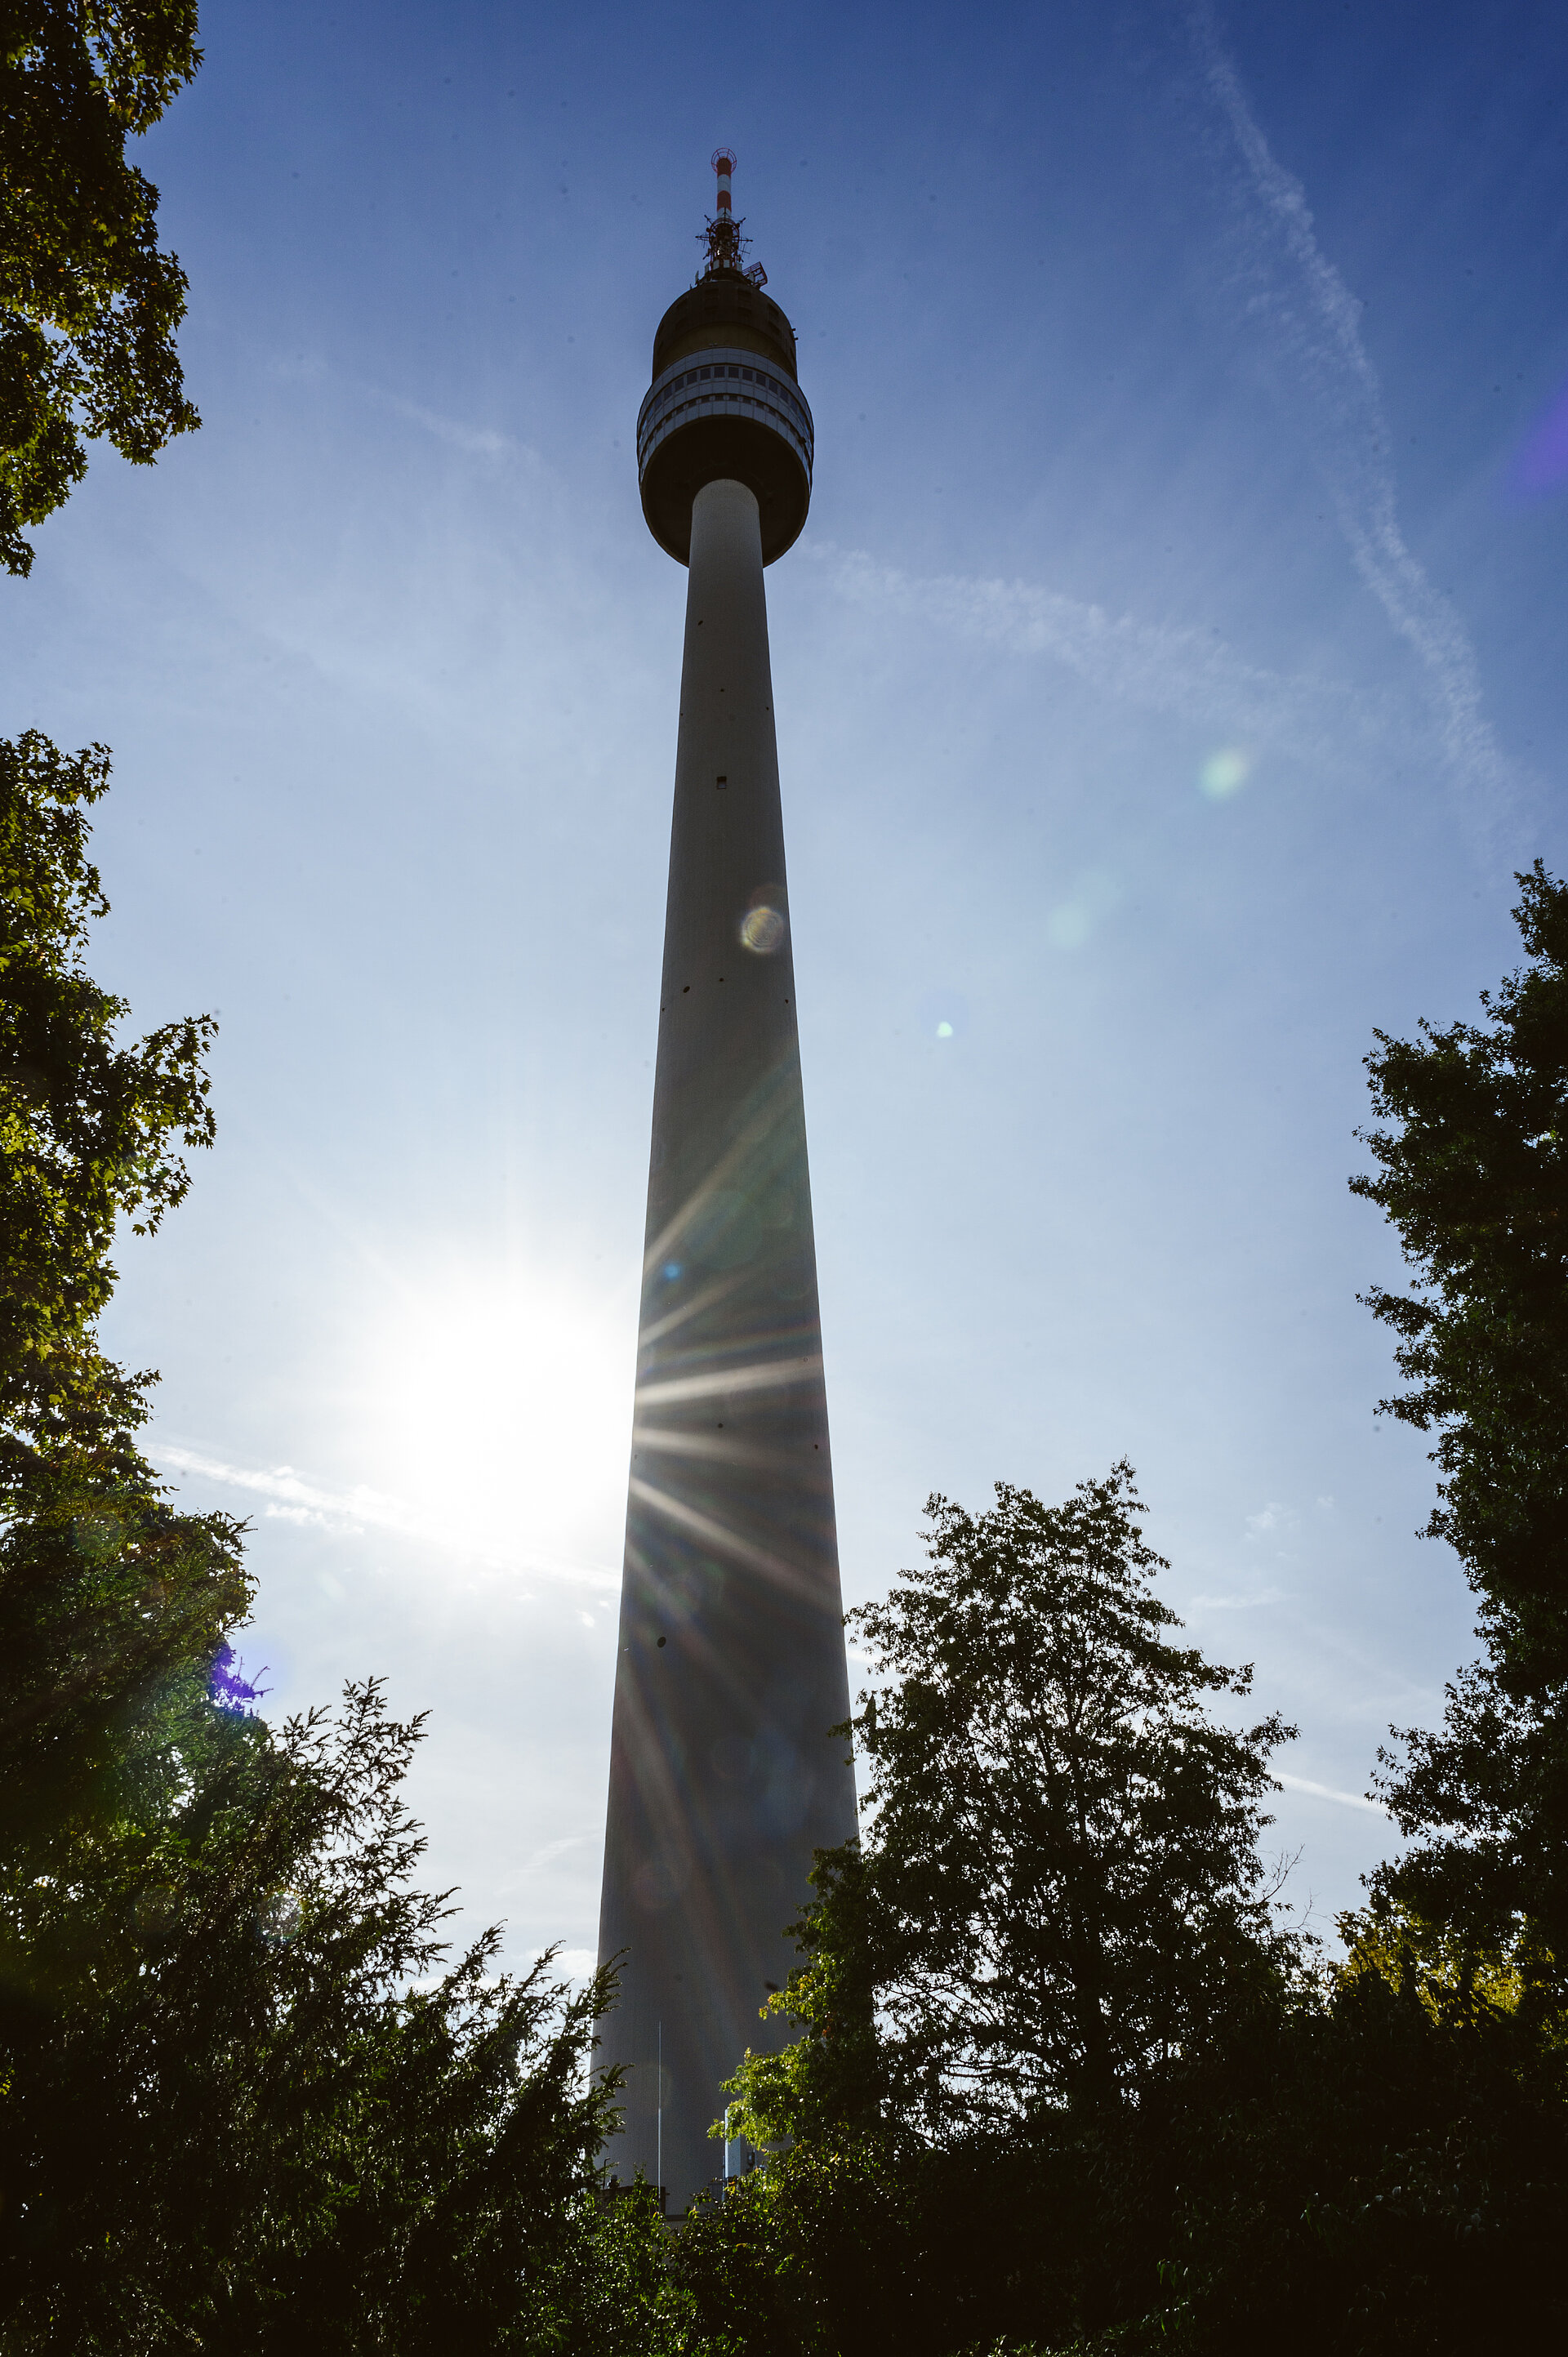 Lange Zeit war der Florian der höchste Turm Deutschlands.